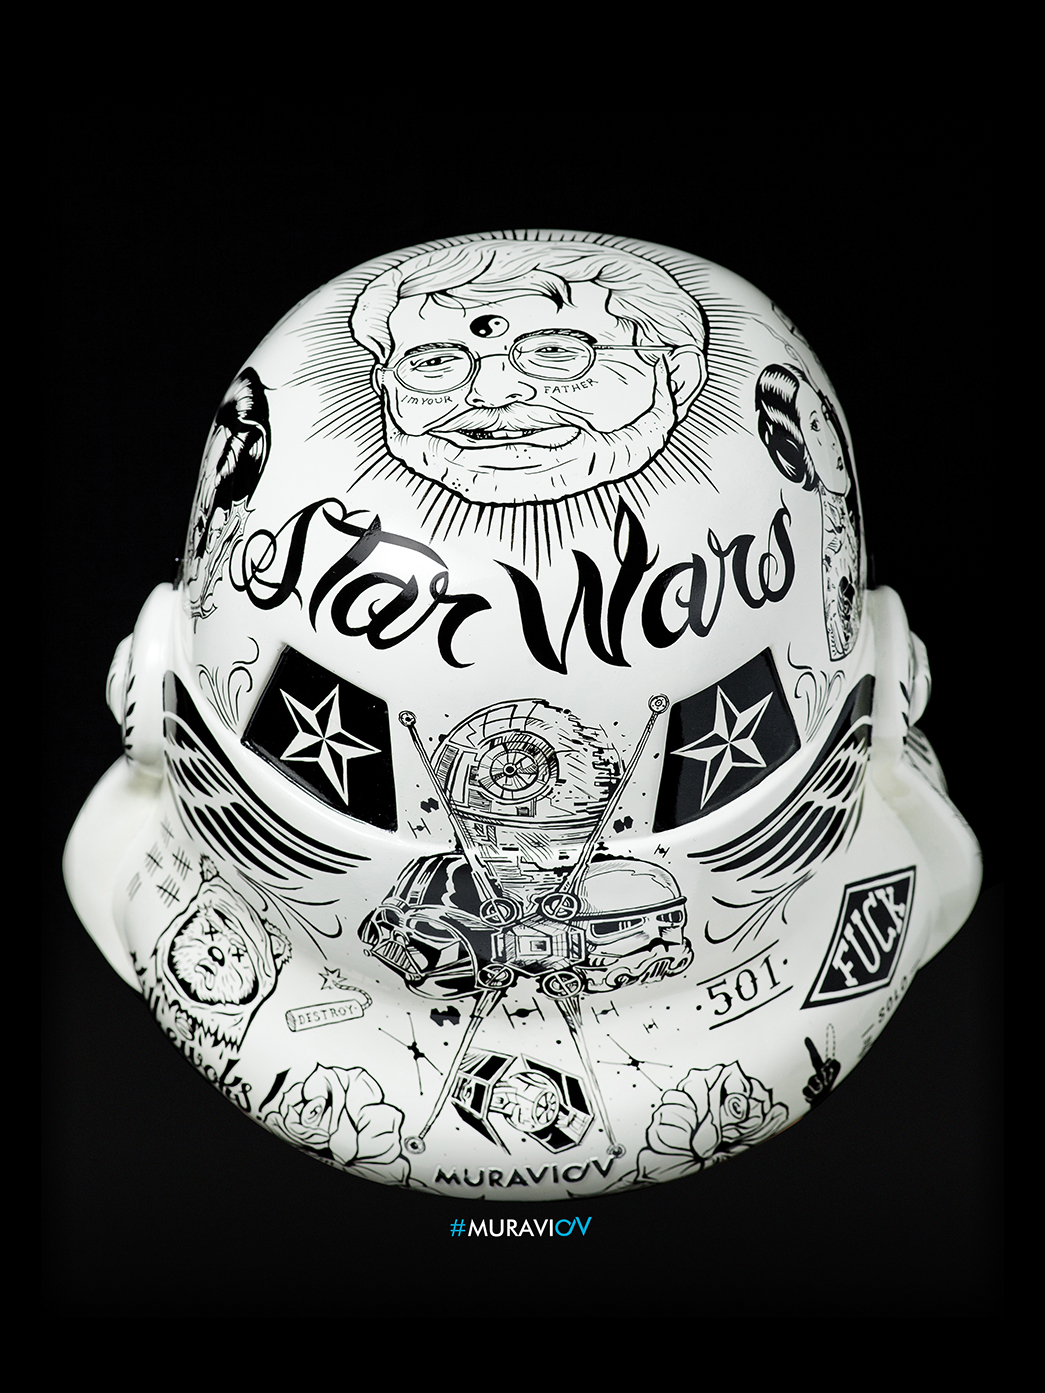 Муравьев studio_oV Дарт Вейдер штурмовика звездные войны шлем ручной работы   герой marvelcomics супергероев georgelucas